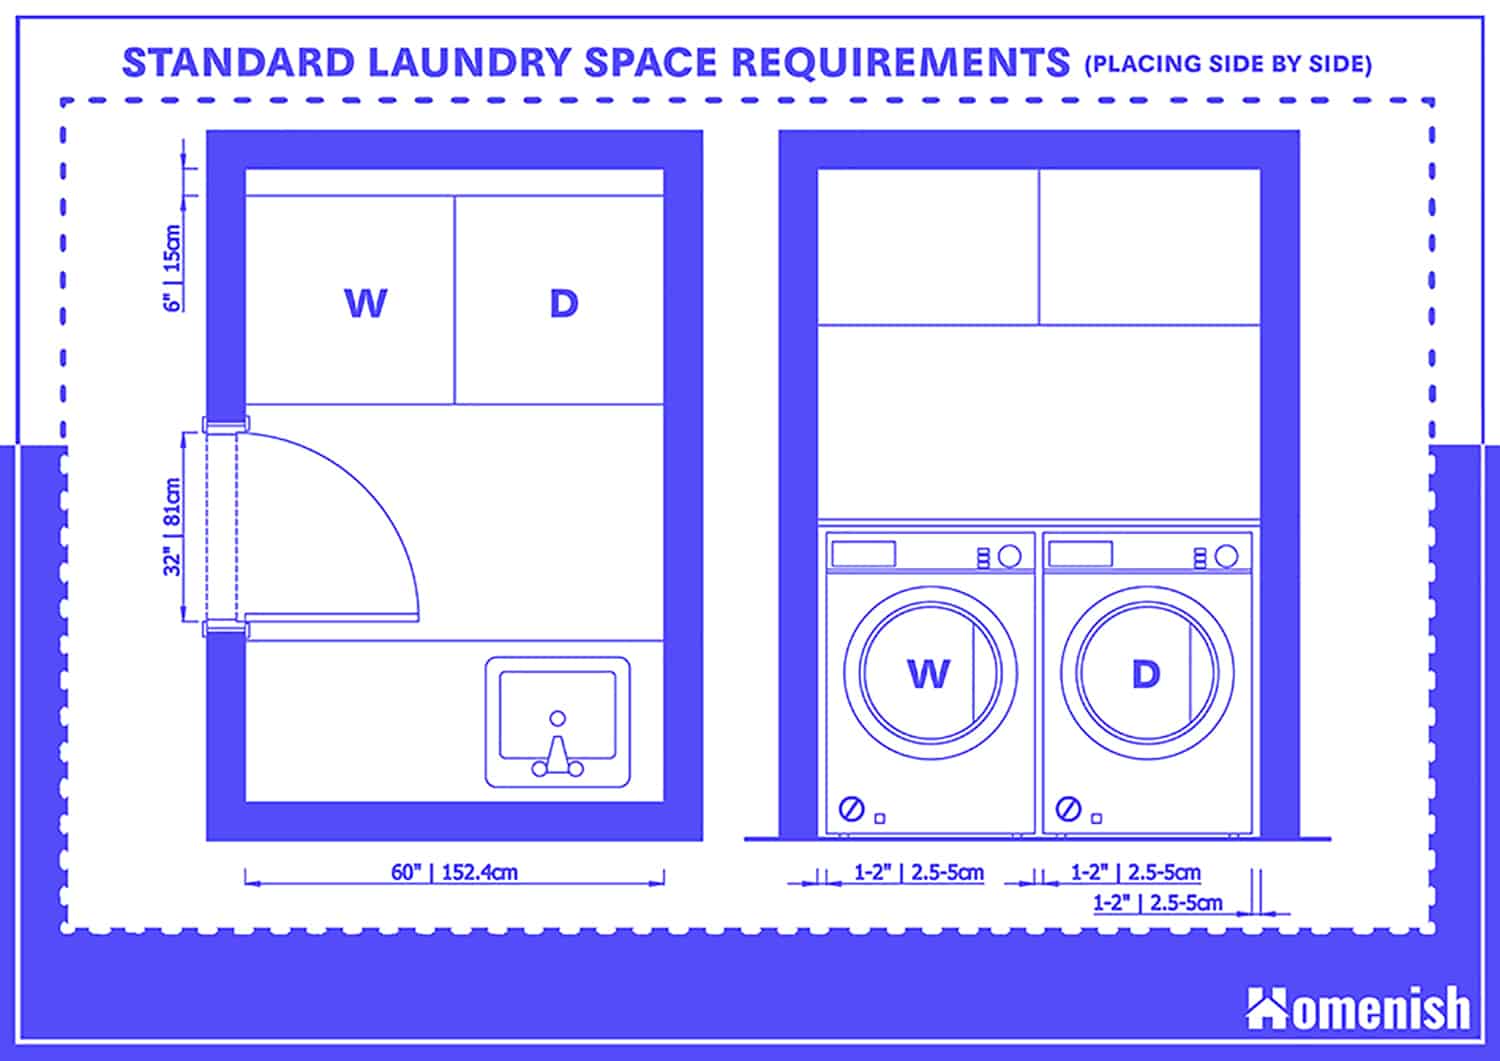 標準洗衣房空間要求(並排放置洗衣機和烘幹機)